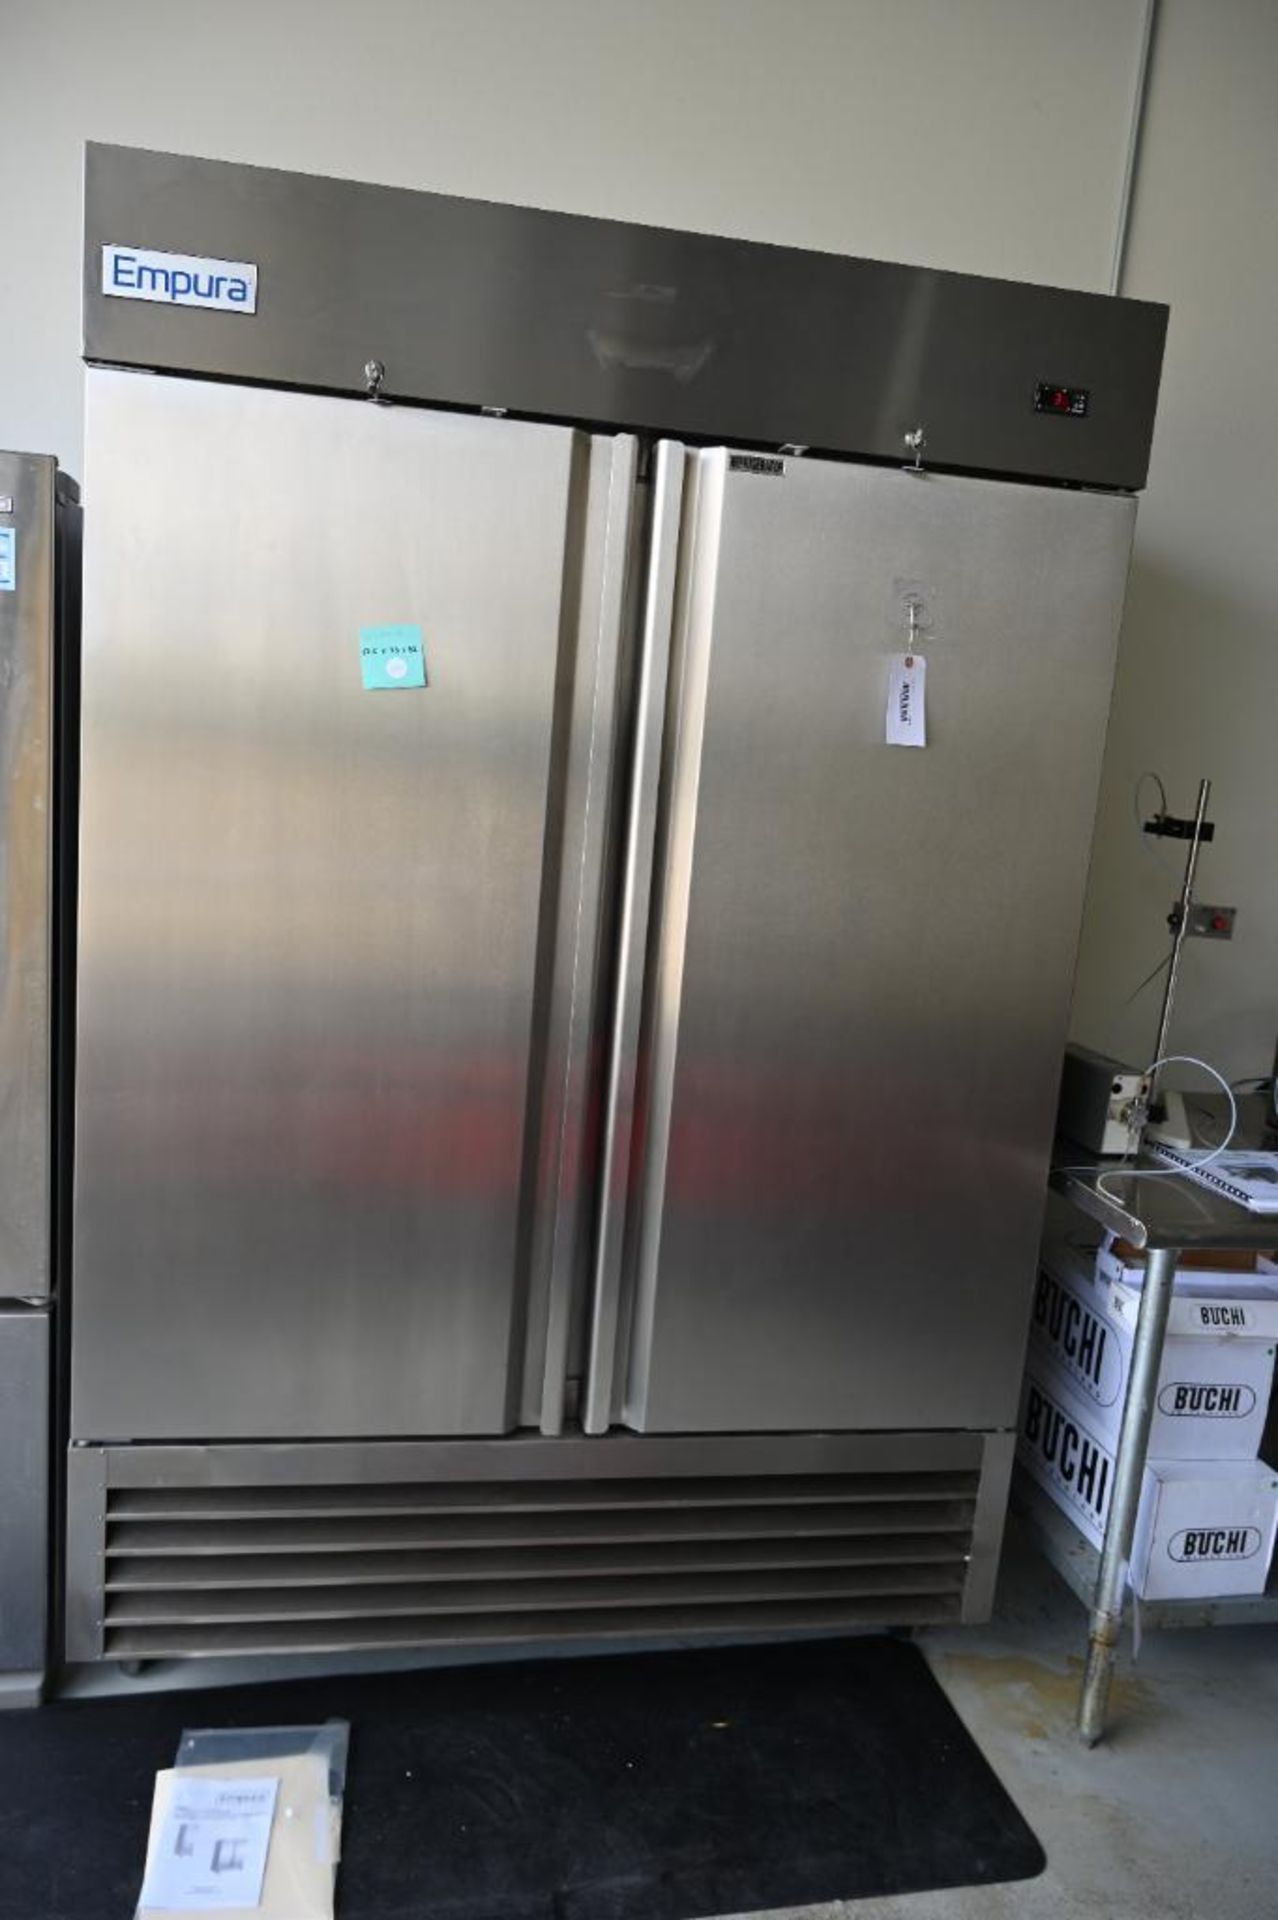 Empura model EKB54R Stainless Commercial Refrigerator - Image 13 of 14